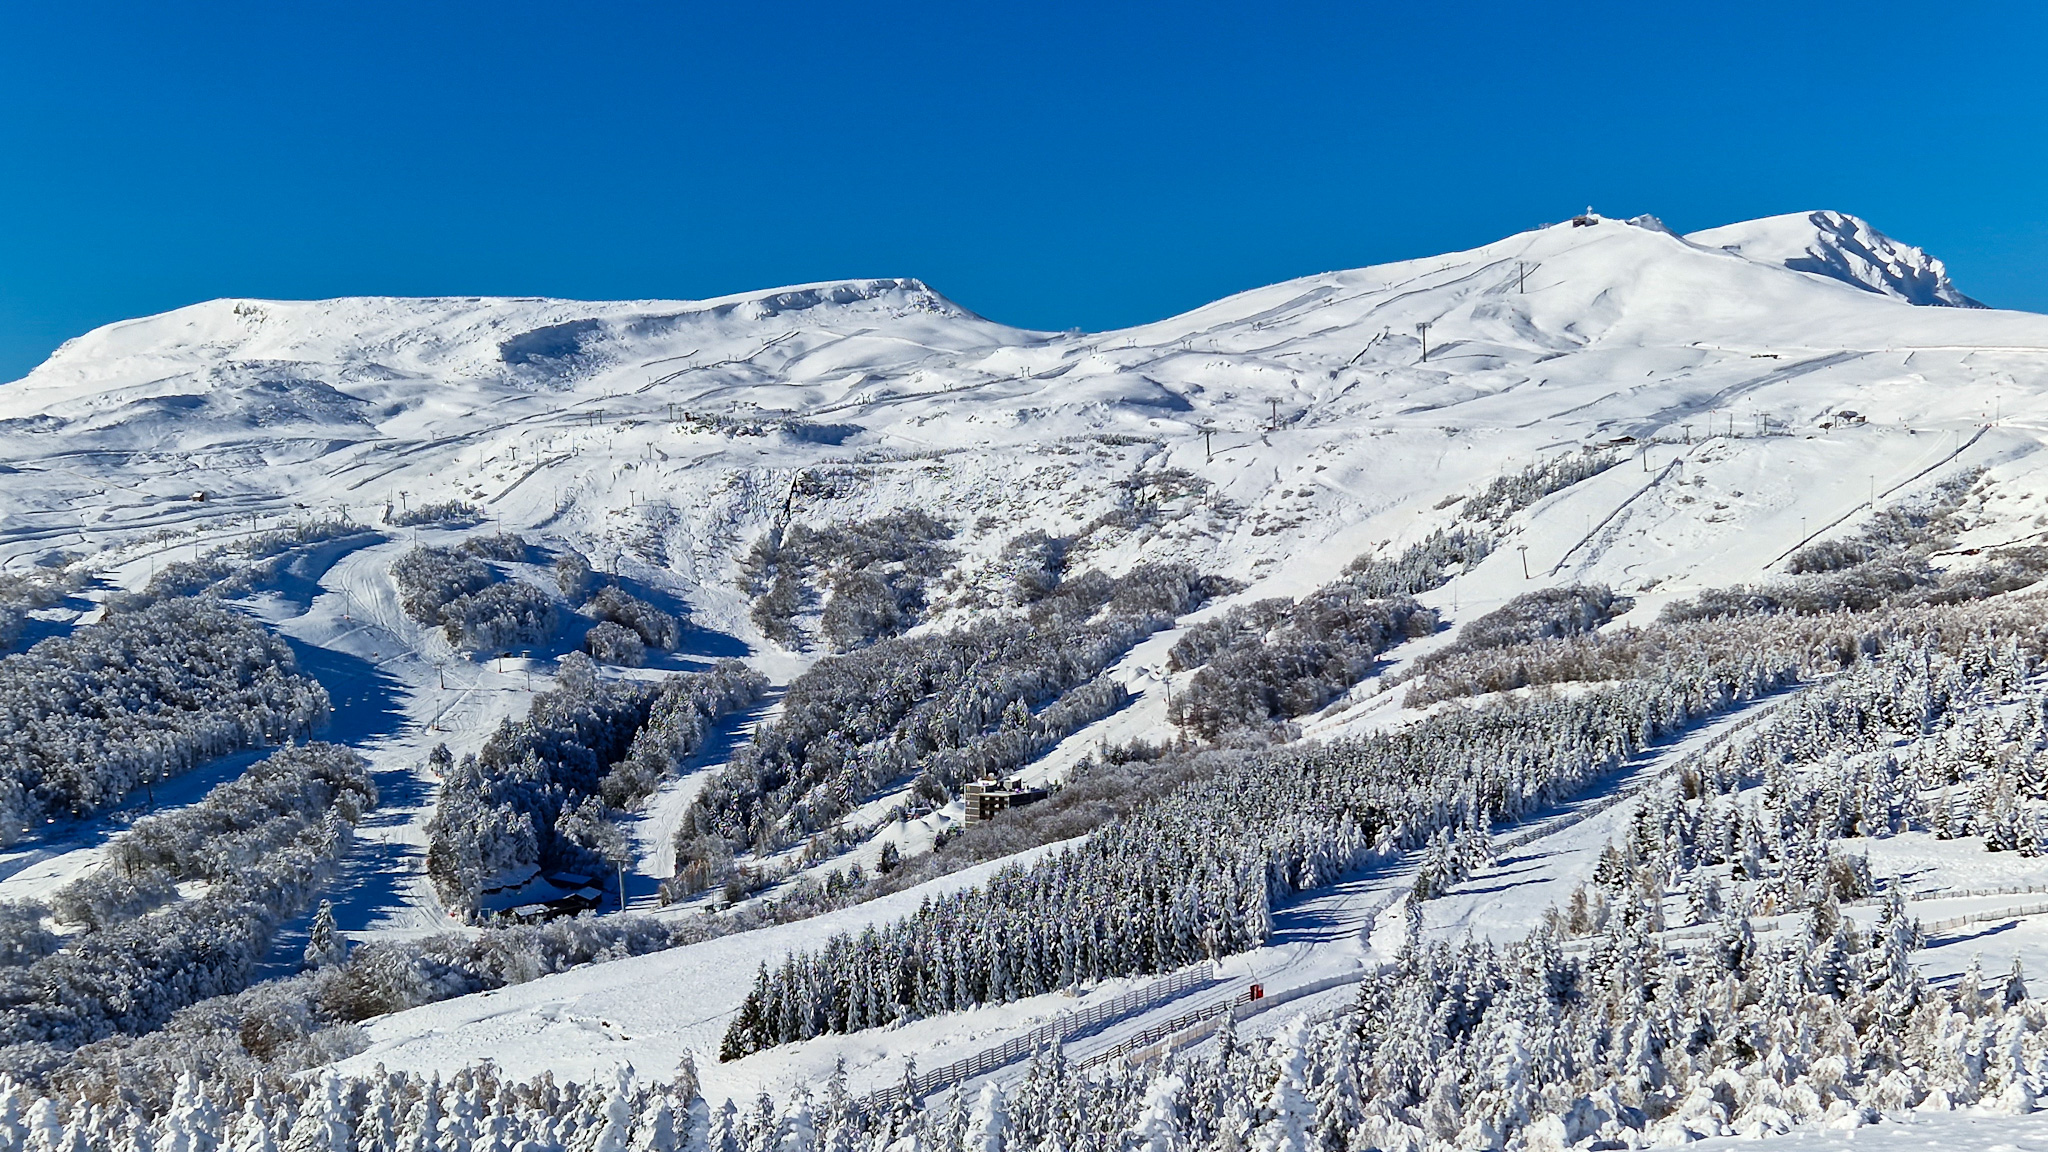 Ski area of the ski resort of Super Besse